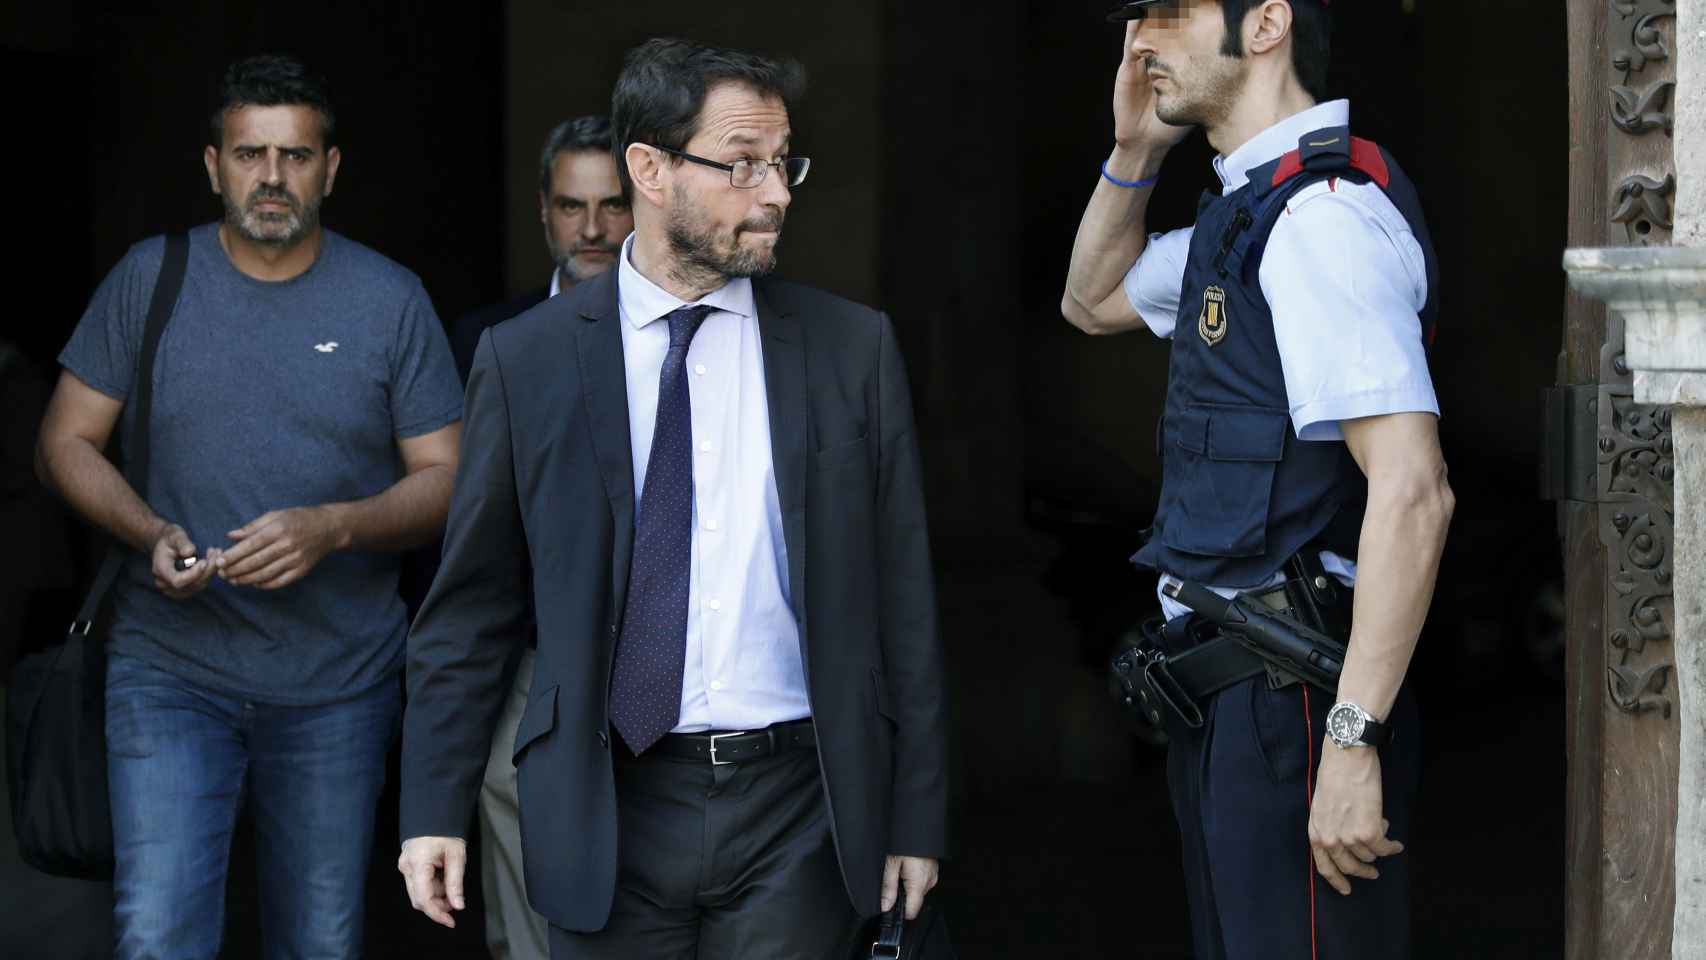 El fiscal José Grinda, saliendo de un registro en el Palau de la Generalitat en julio de 2017./